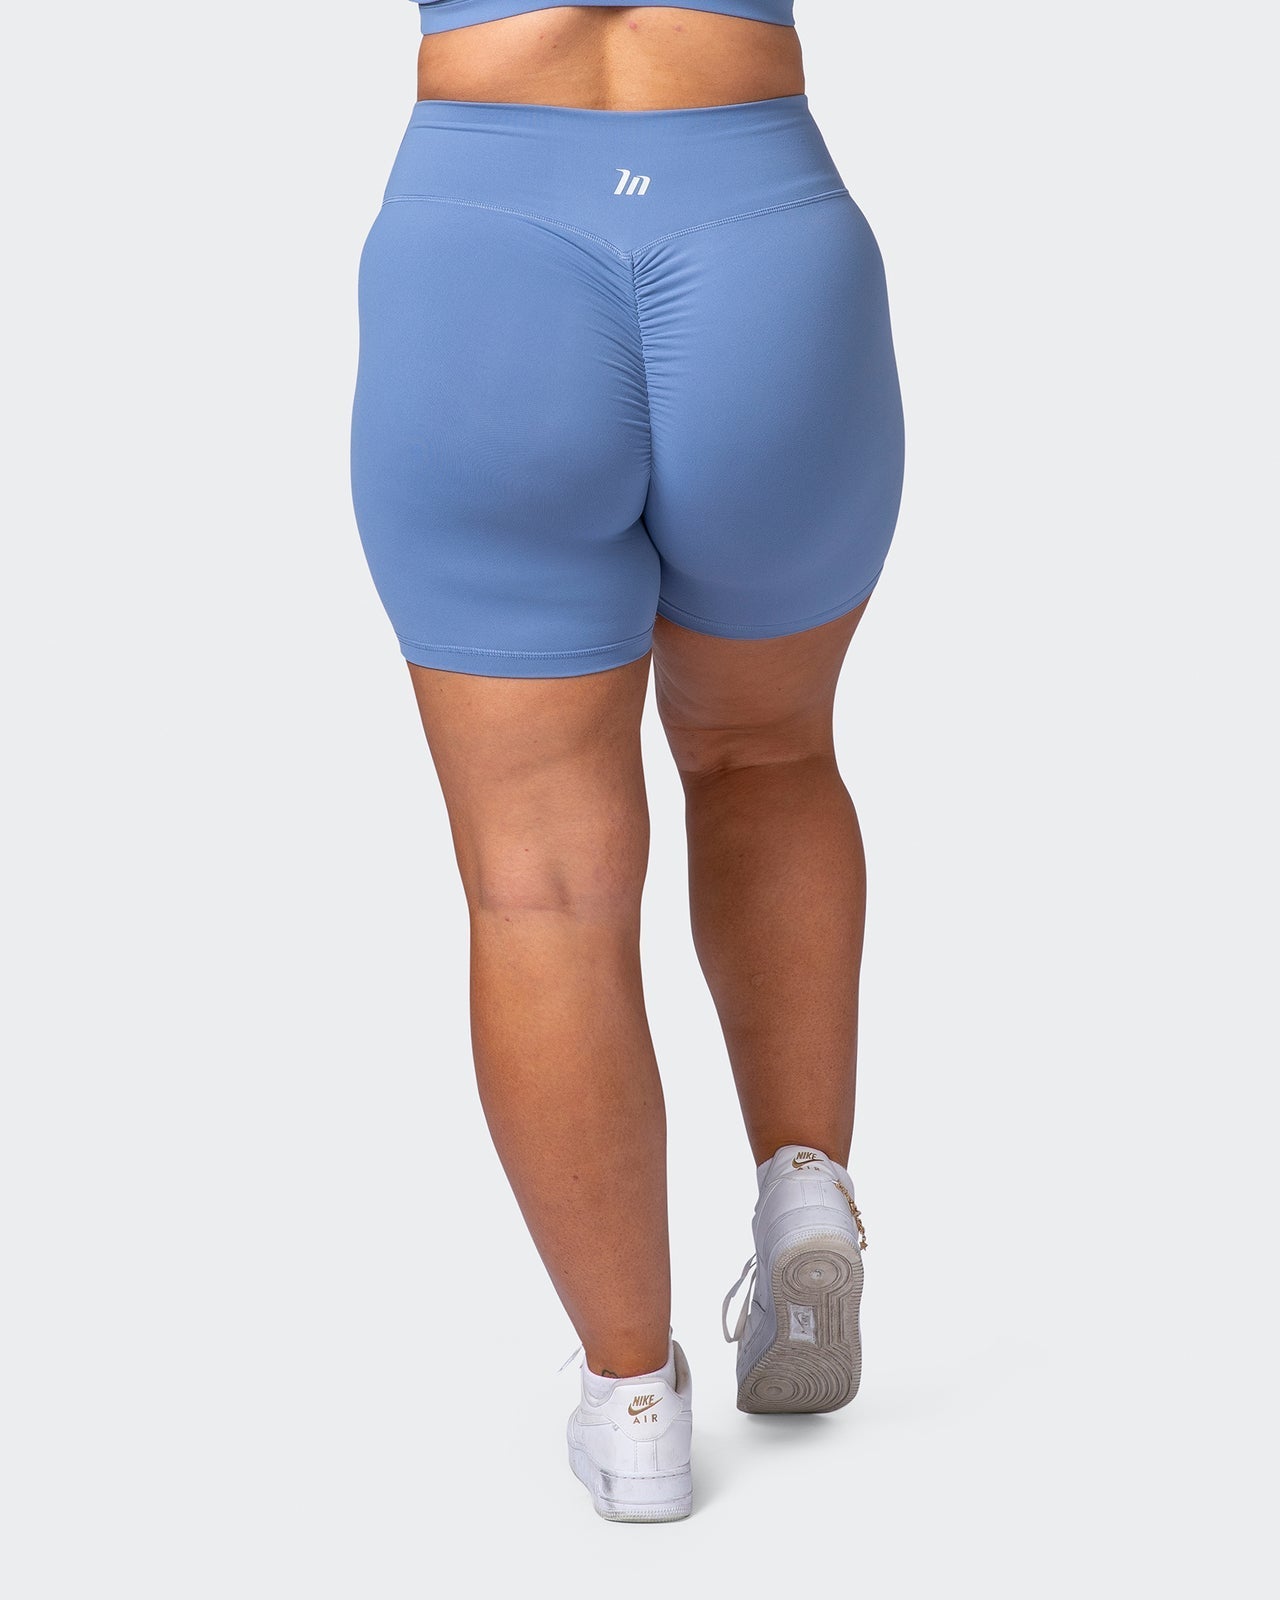 Pchee Royal Blue Soft Waistband Scrunch Butt Biker Shorts